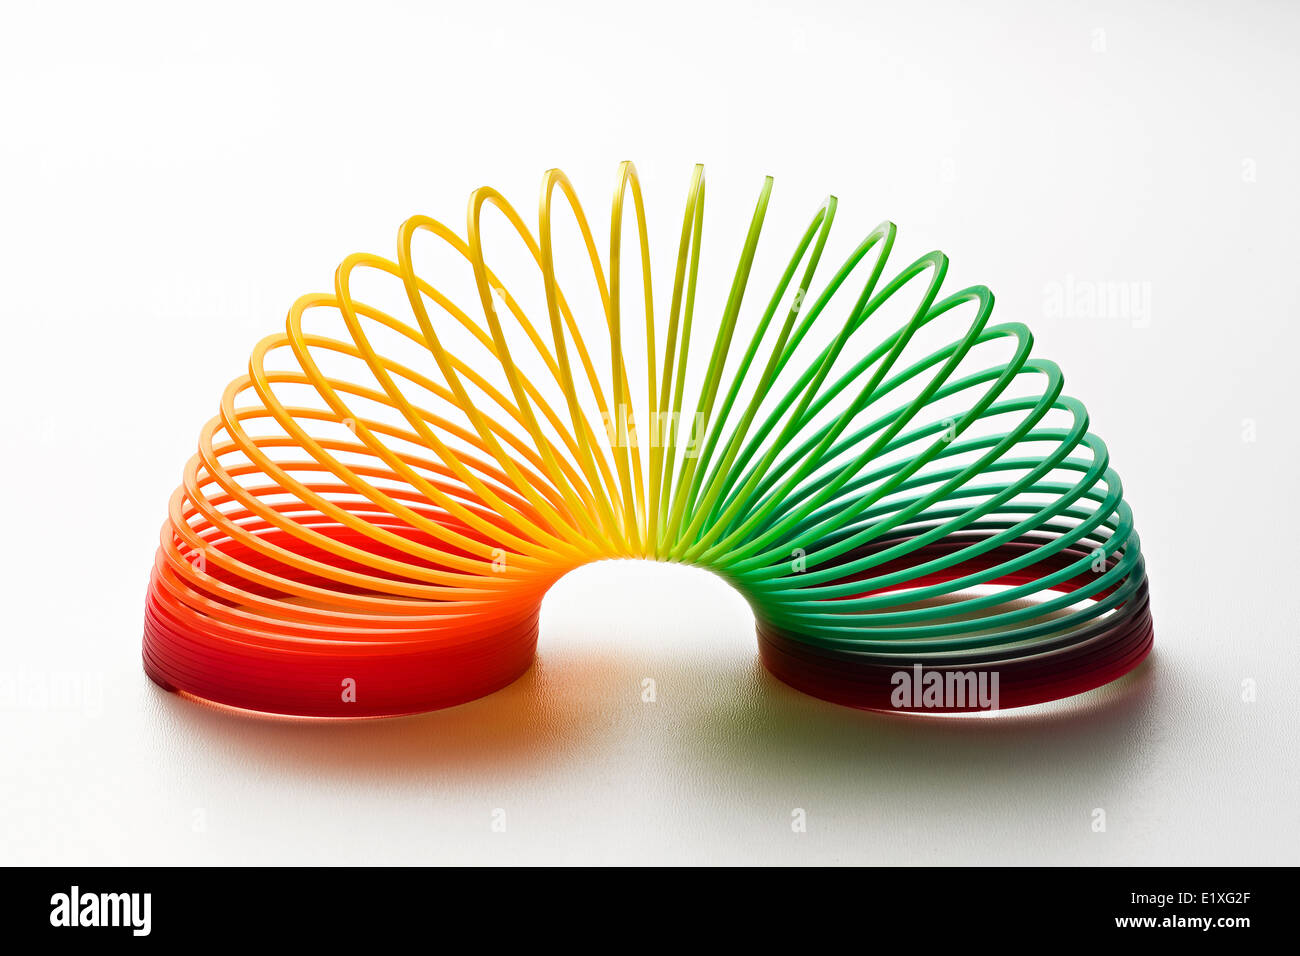 Arco iris de colores slinky juguete de plástico hechas de una bobina de alambre en espiral que permite flexibilidad y movilidad Foto de stock